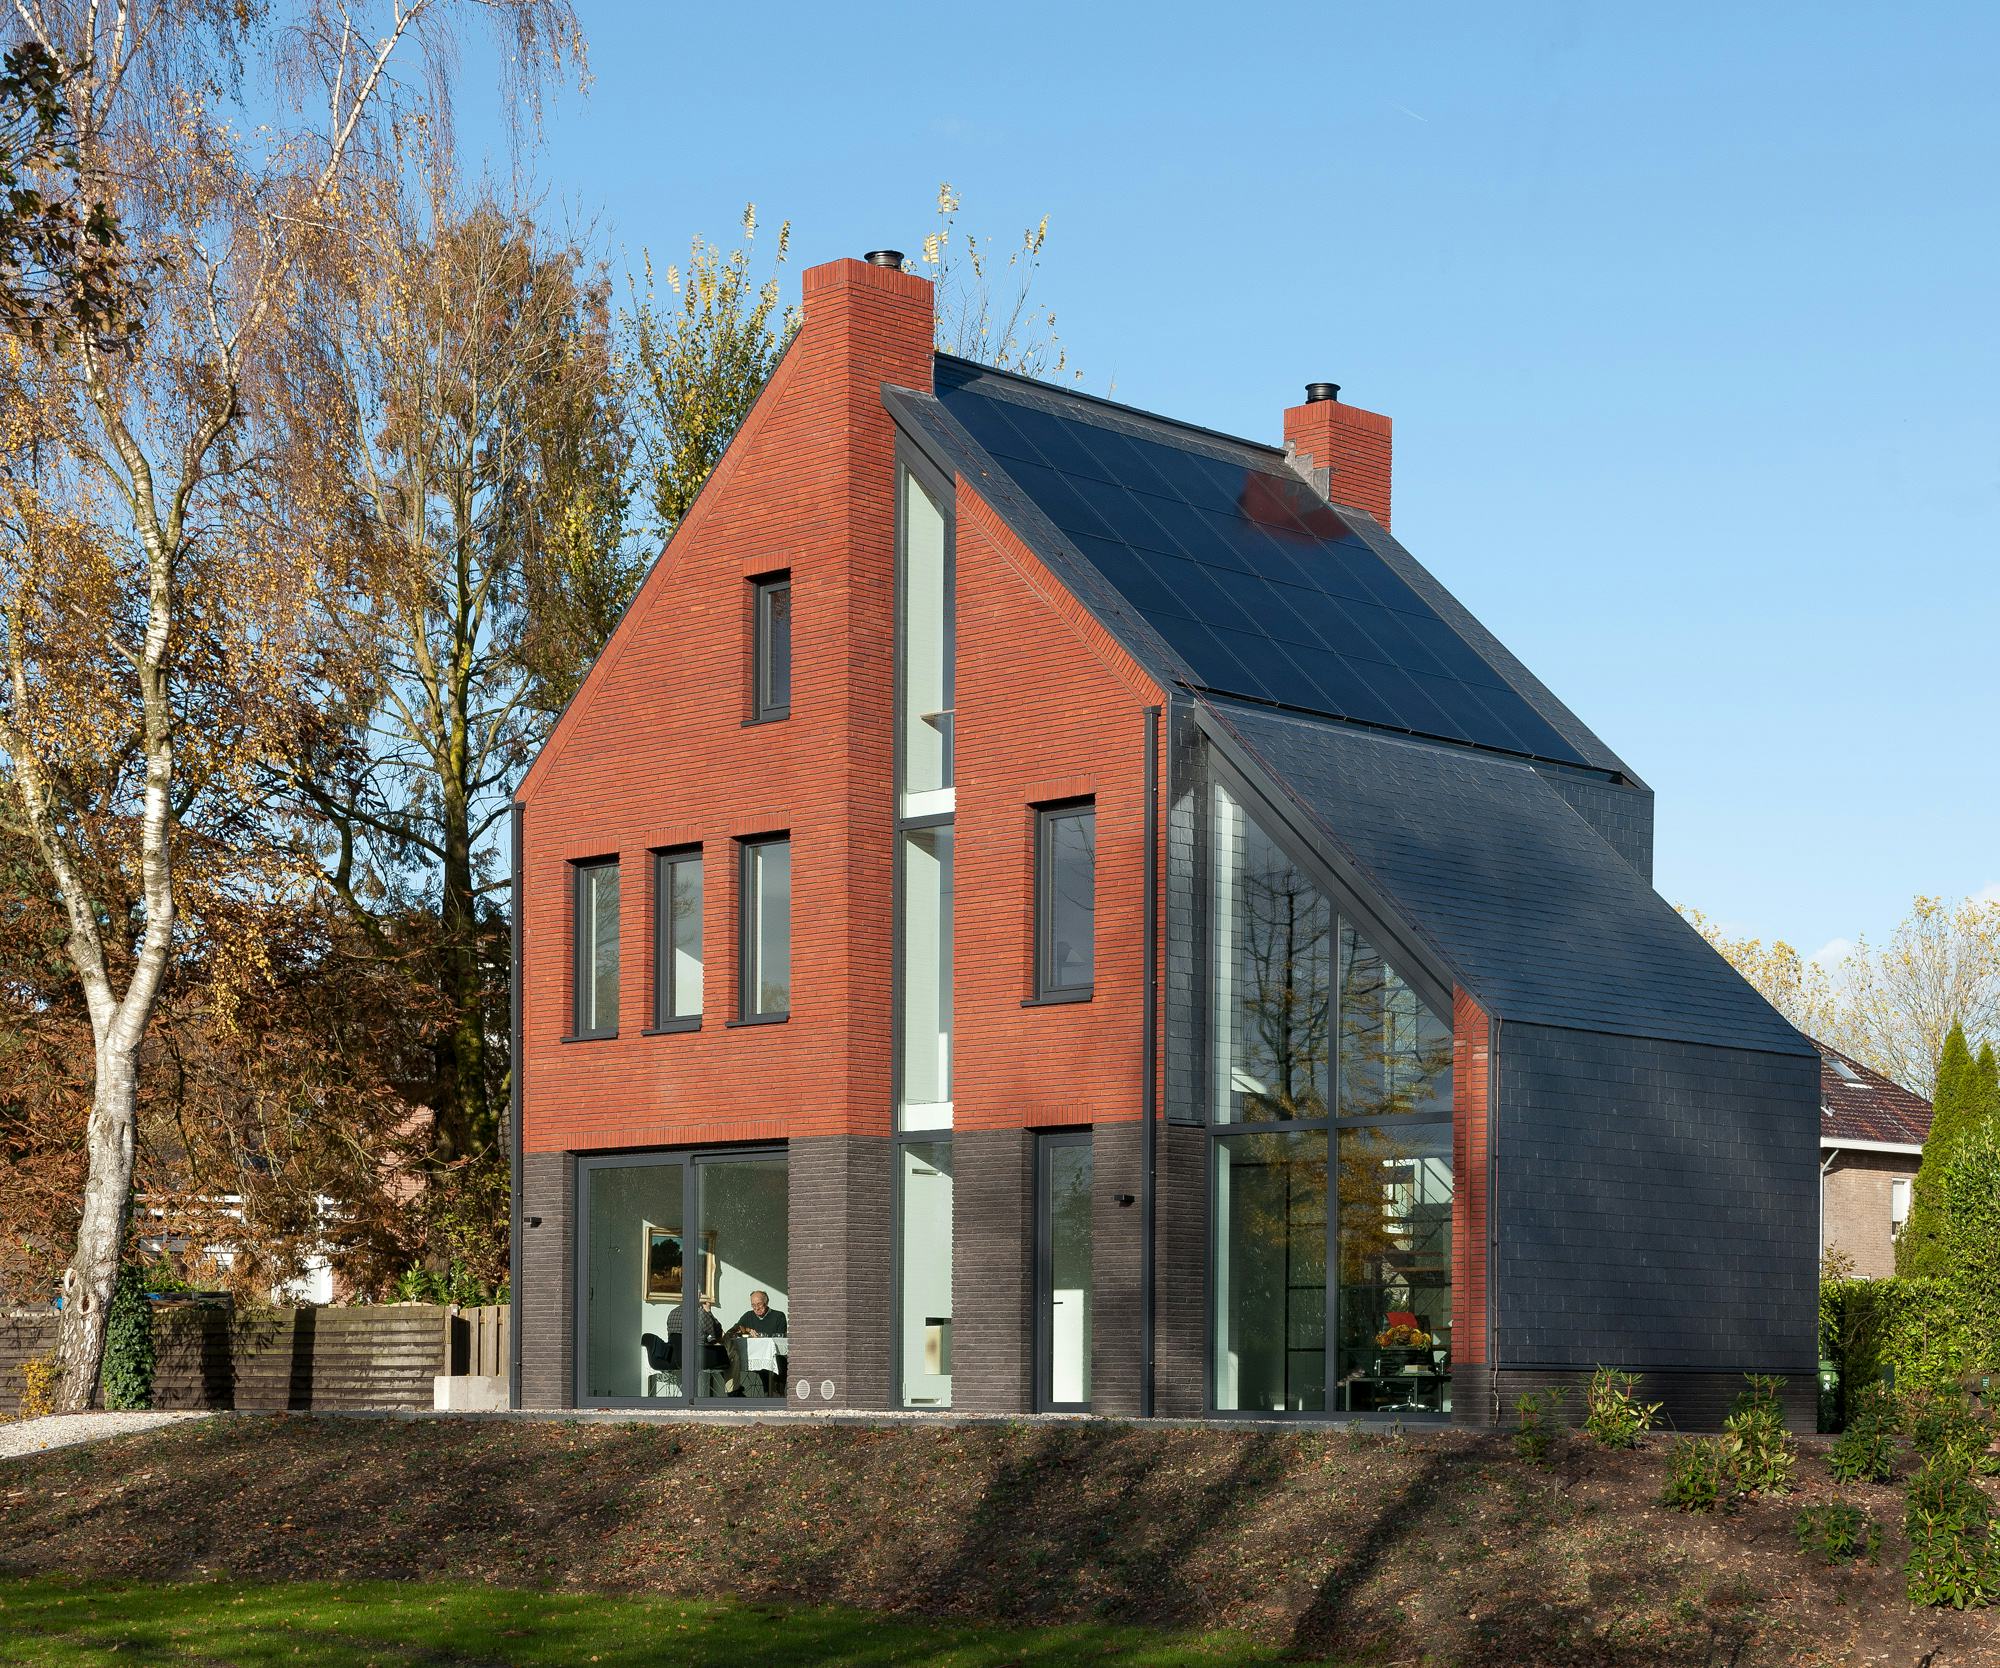 Woonhuis in Amerongen door Griffioen architecten, beeld Lisette van de Pavoordt